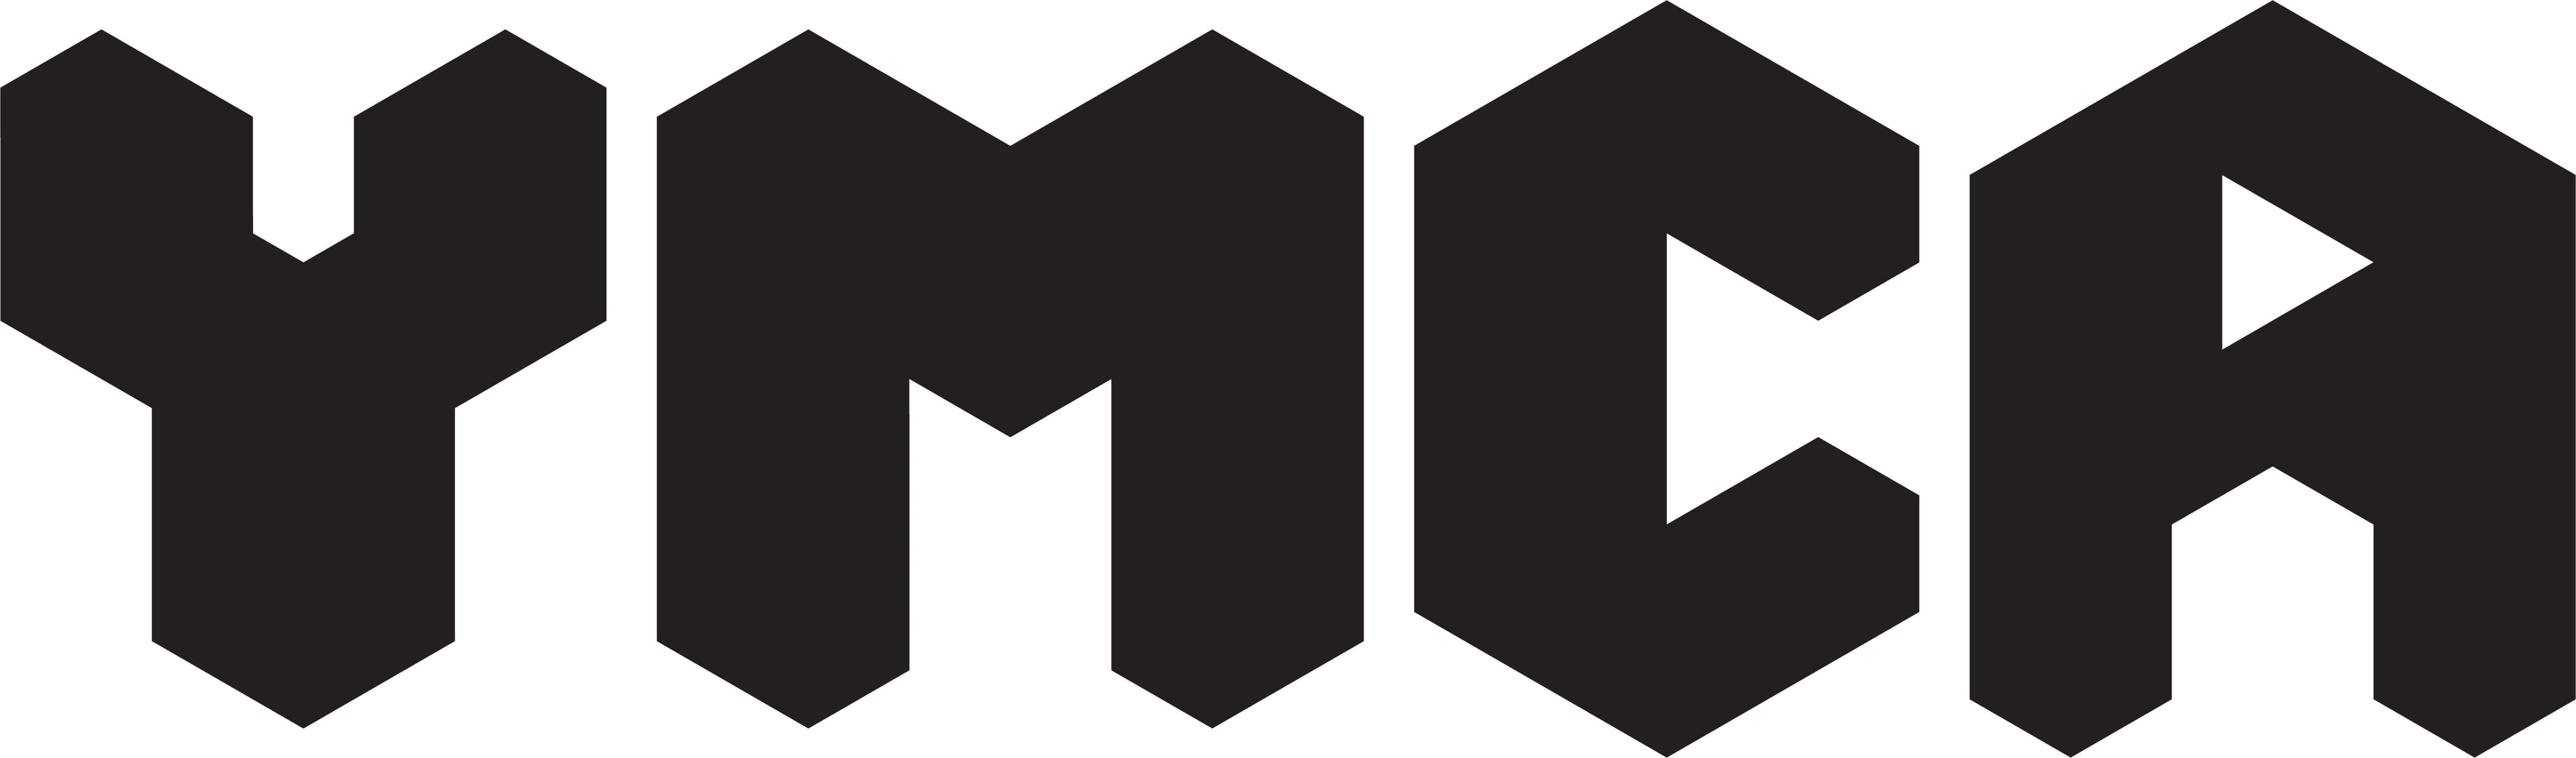 Original Ymca Logo